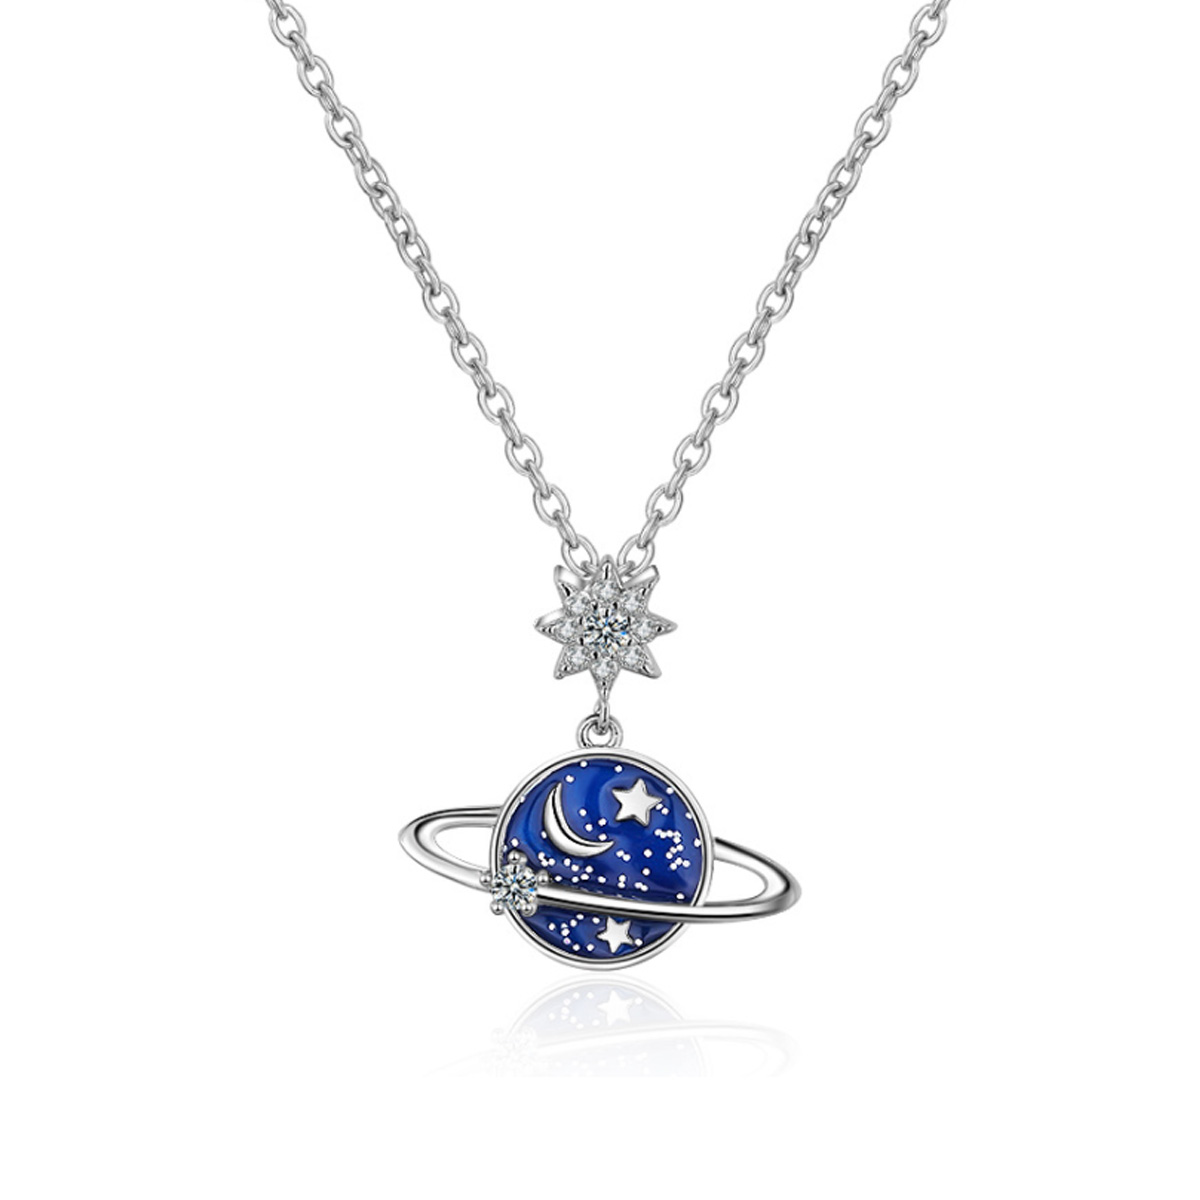 925 Silver Enchanted Cosmos Necklace with Zirconia & Enamel Drip Design.